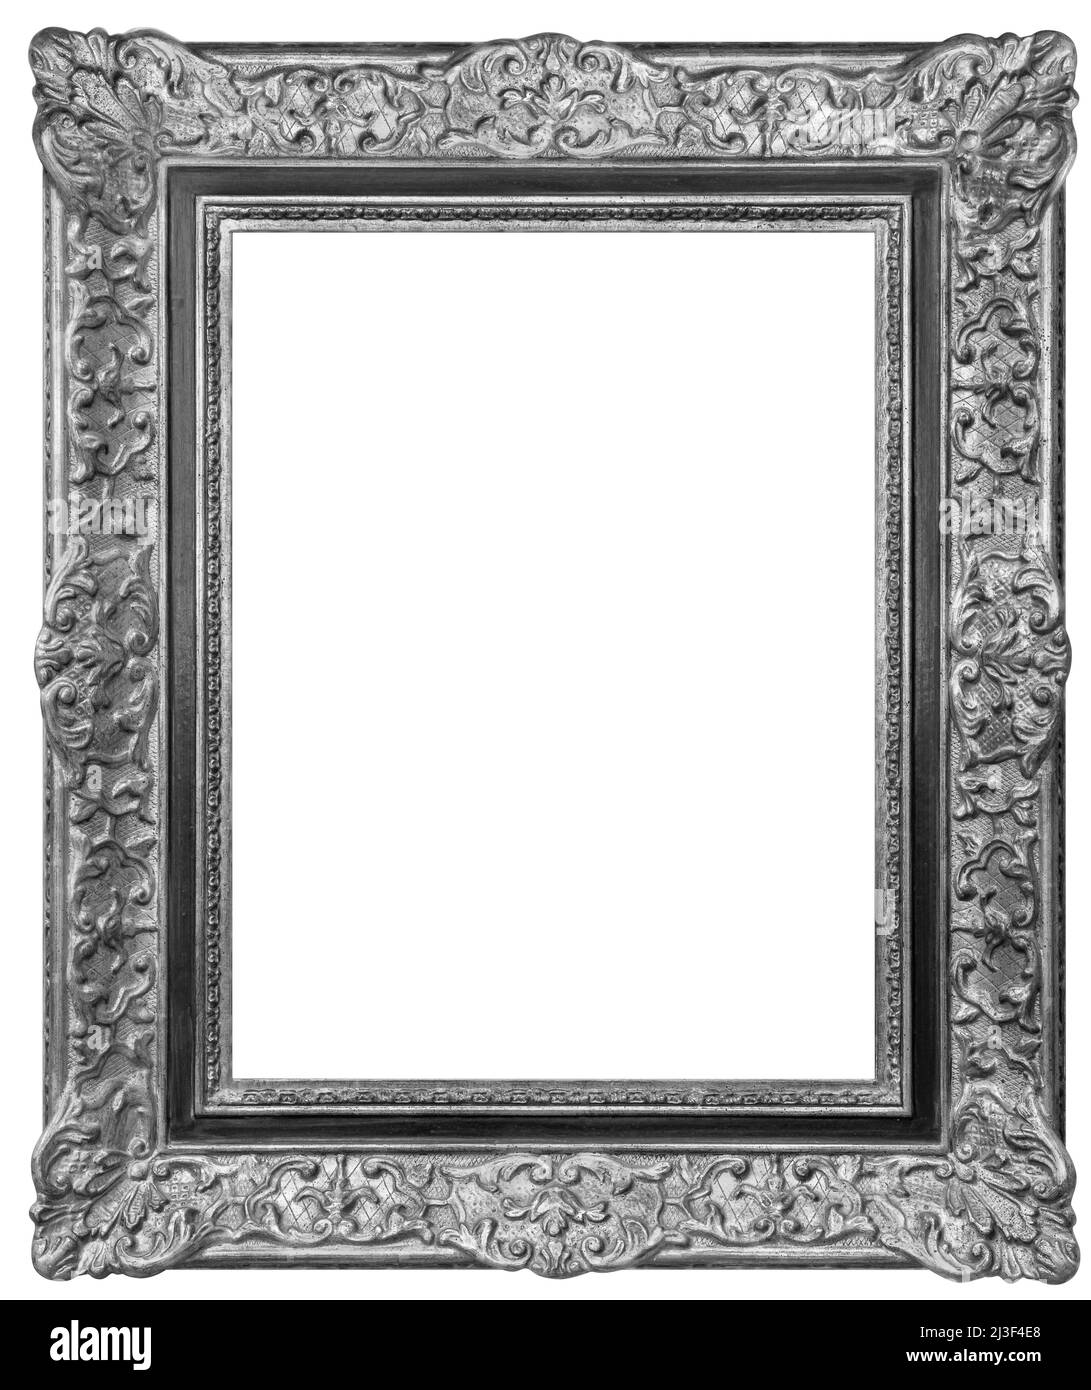 Antiguo marco rectangular de madera vintage chapado en plata, aislado sobre fondo blanco Foto de stock